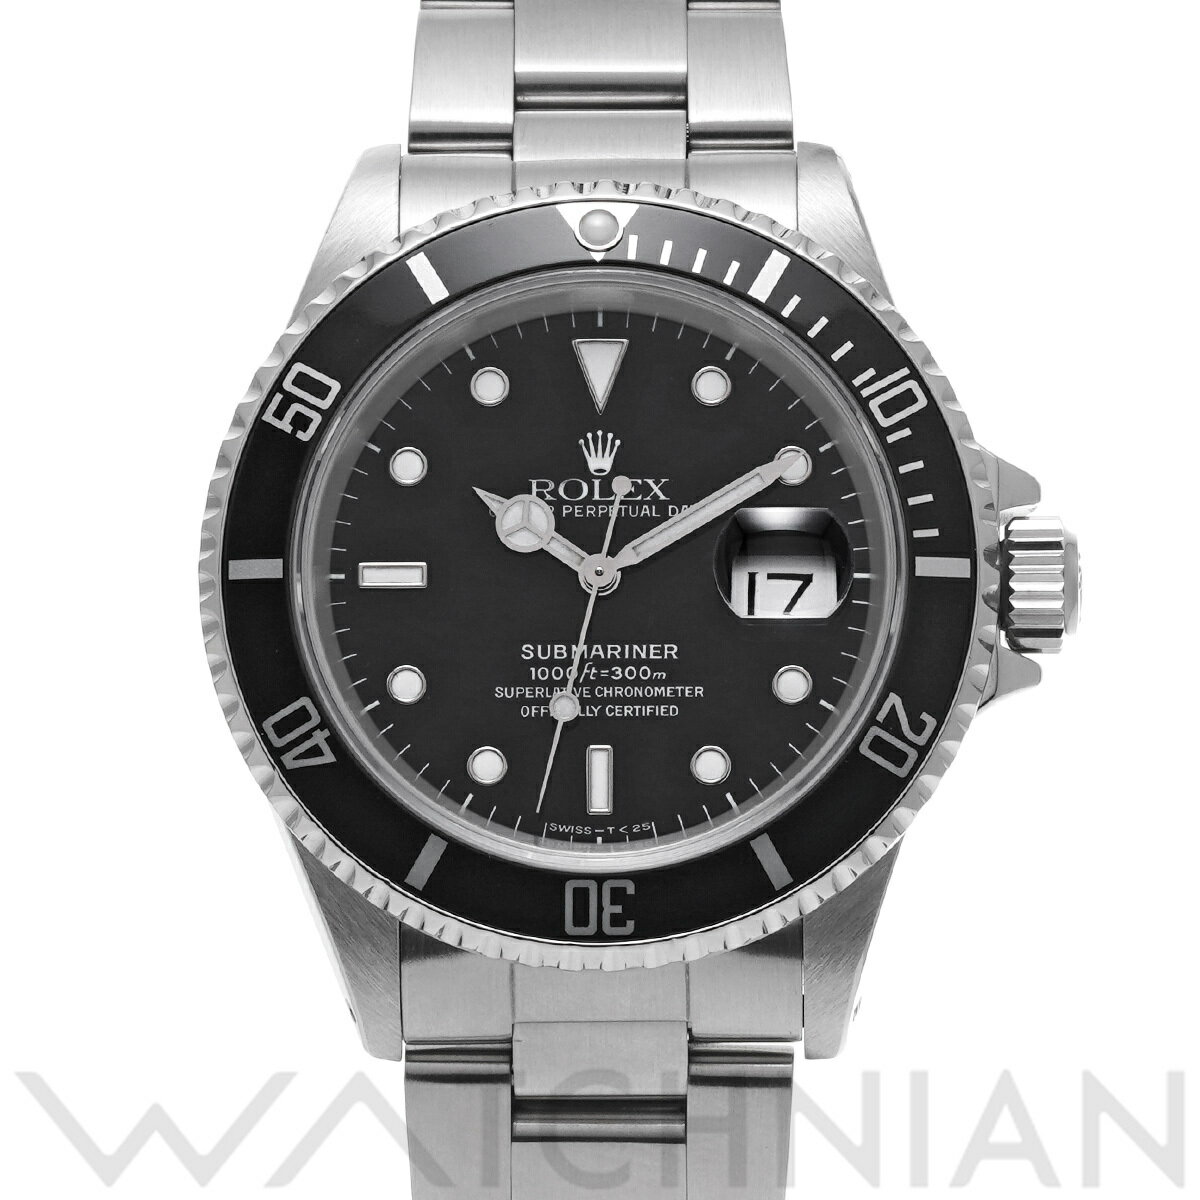 【ローン60回払い無金利】【中古】 ロレックス ROLEX サブマリーナ デイト 16610 N番(1991年頃製造) ブラック メンズ 腕時計 ロレックス 時計 高級腕時計 ブランド